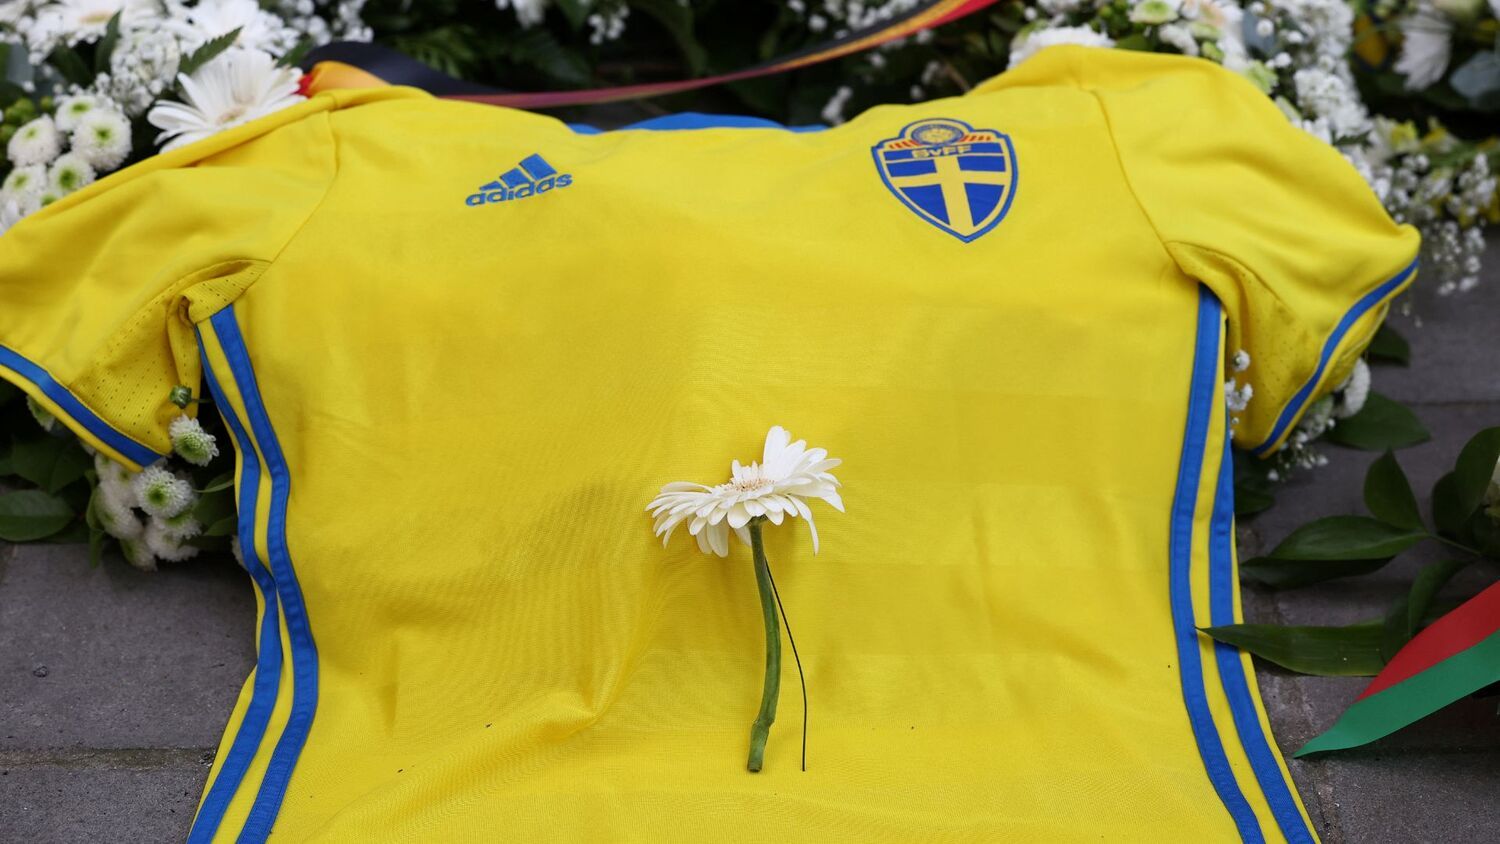 Tiroteio após jogo de futebol na Suécia deixa vários feridos